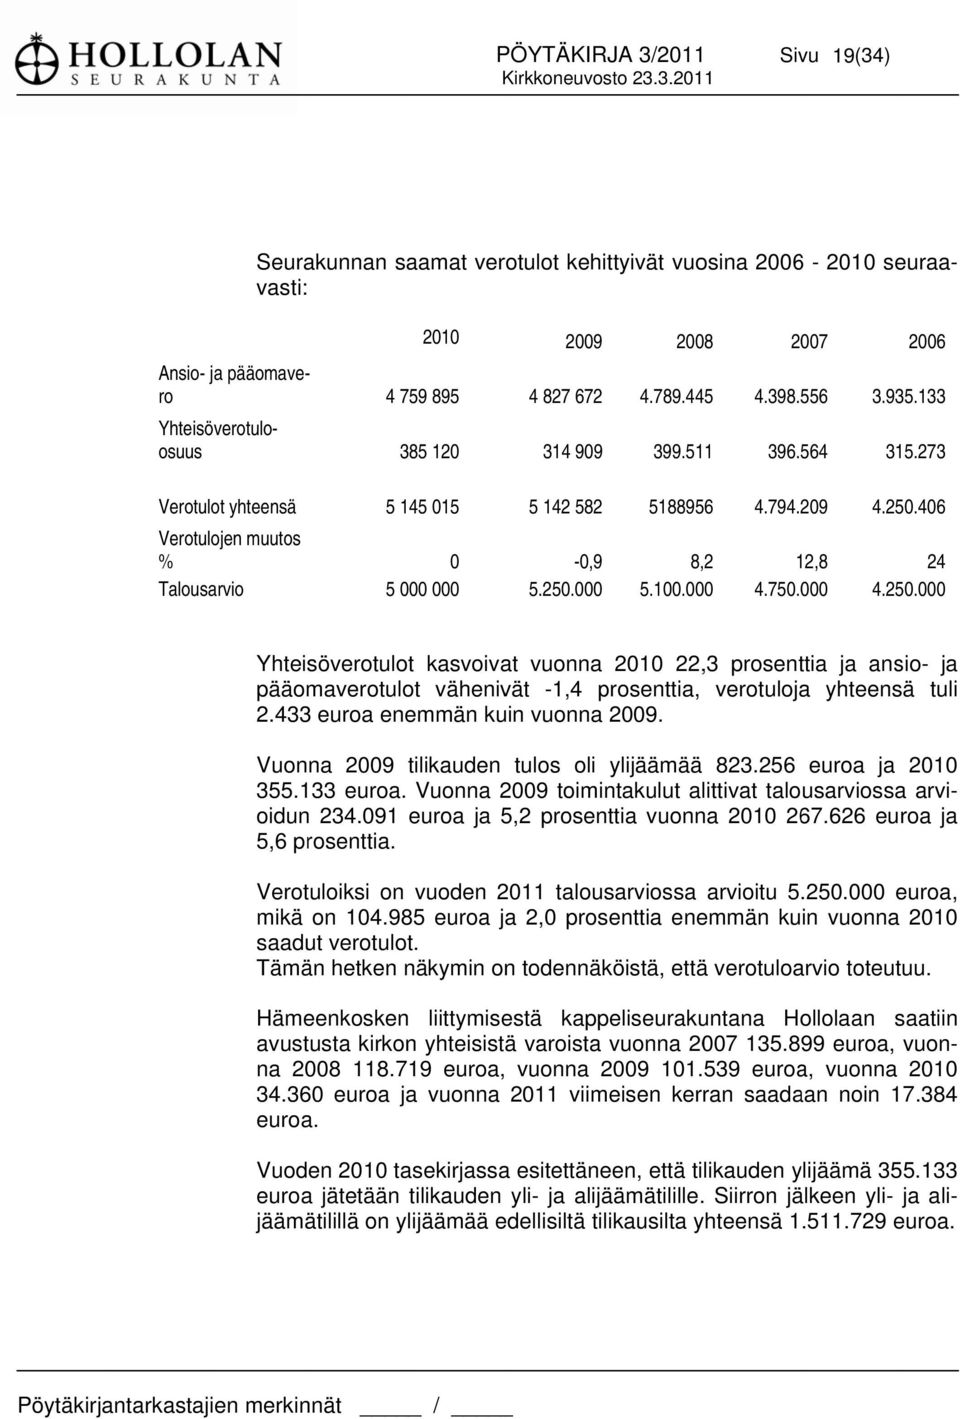 626 euroa 5,6 prosenttia. Verotuloiksi on vuoden 2011 talousarviossa arvioitu 5.250.000 euroa, mikä on 104.985 euroa ja 2,0 prosenttia enemmän kuin vuonna 2010 saadut verotulot.